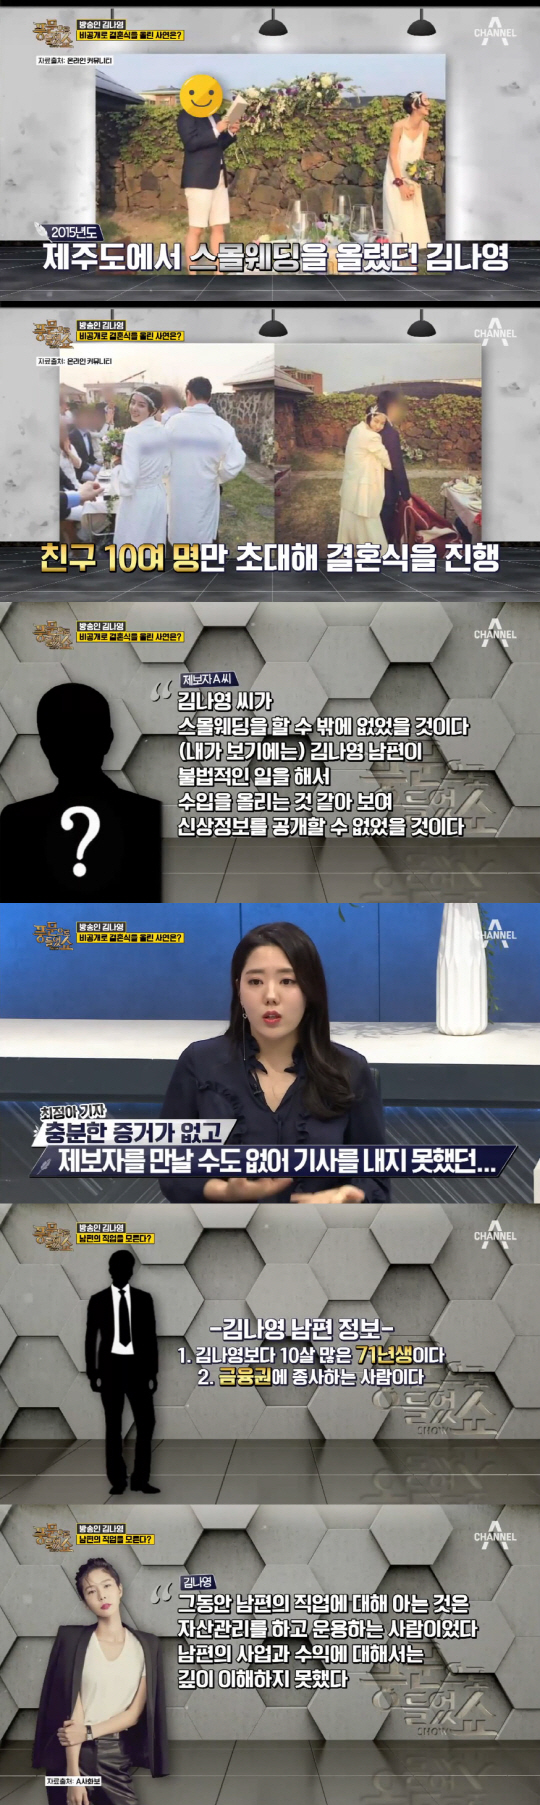 ‘풍문쇼’ “김나영이 비공개·스몰 웨딩을 올린 이유...”